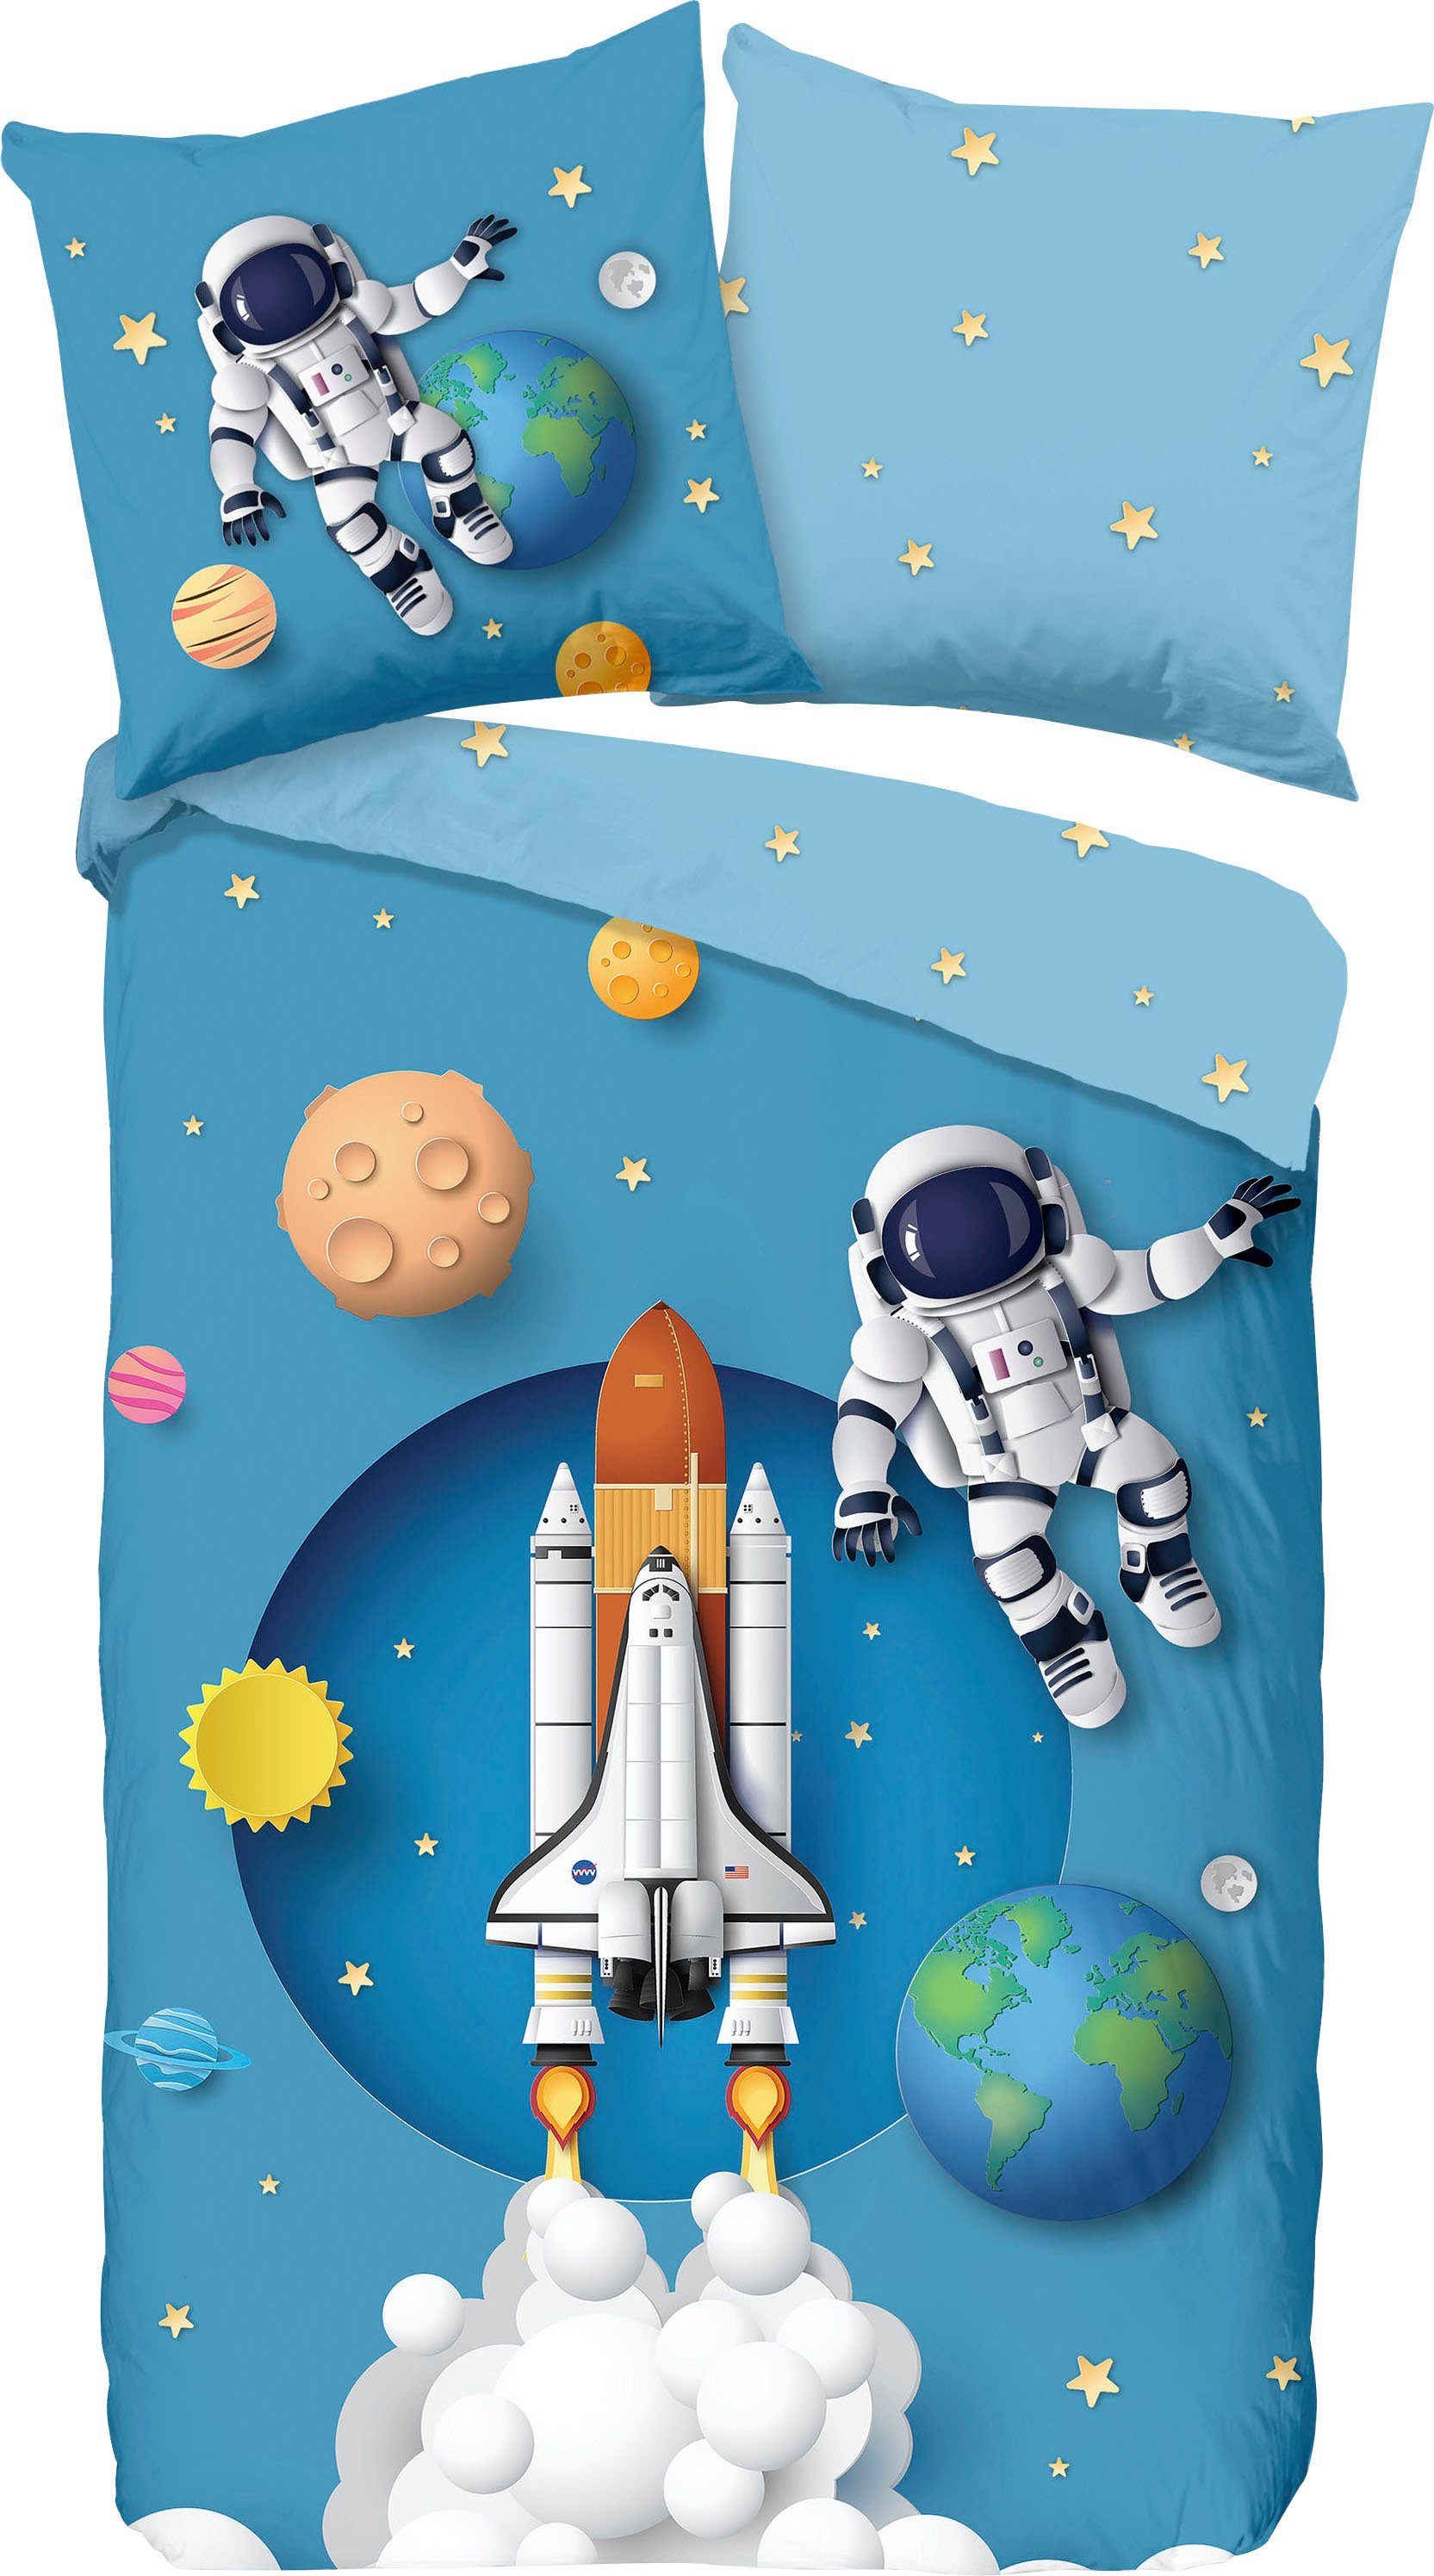 Möbel & Wohnen Bettwaren, wäsche & Matratzen ADELHEID Kinder Bettwäsche  ECHT RAKETE 100 x 135 cm blau astronaut sterne €51.9